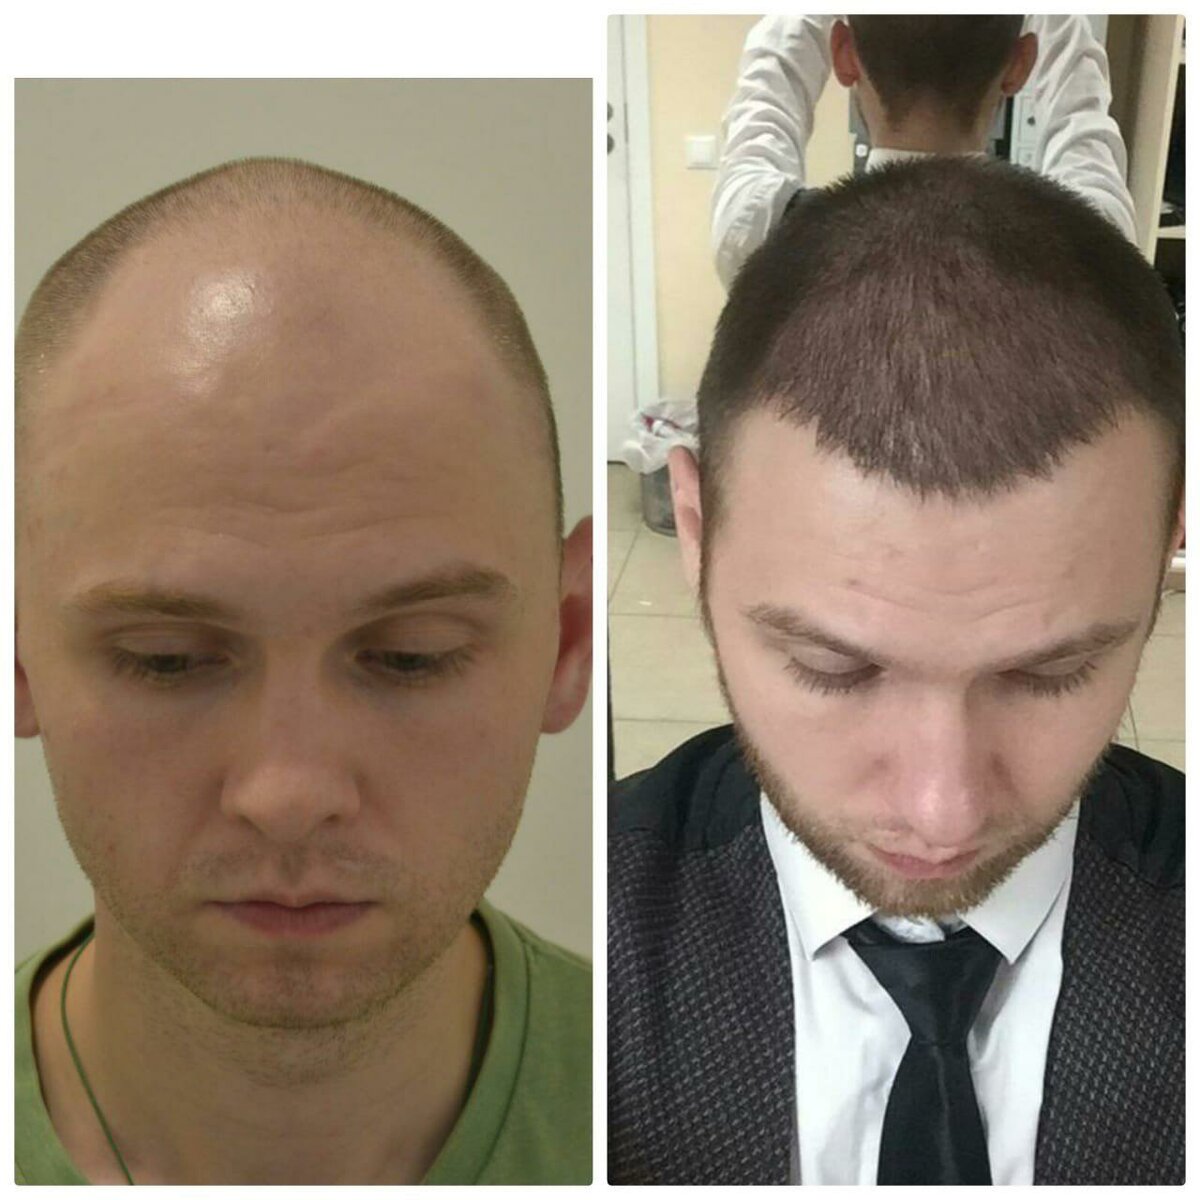 Методы пересадки волос на голове для мужчин и женщин. как проходит операция, hfe, цены клиник, результаты, фото